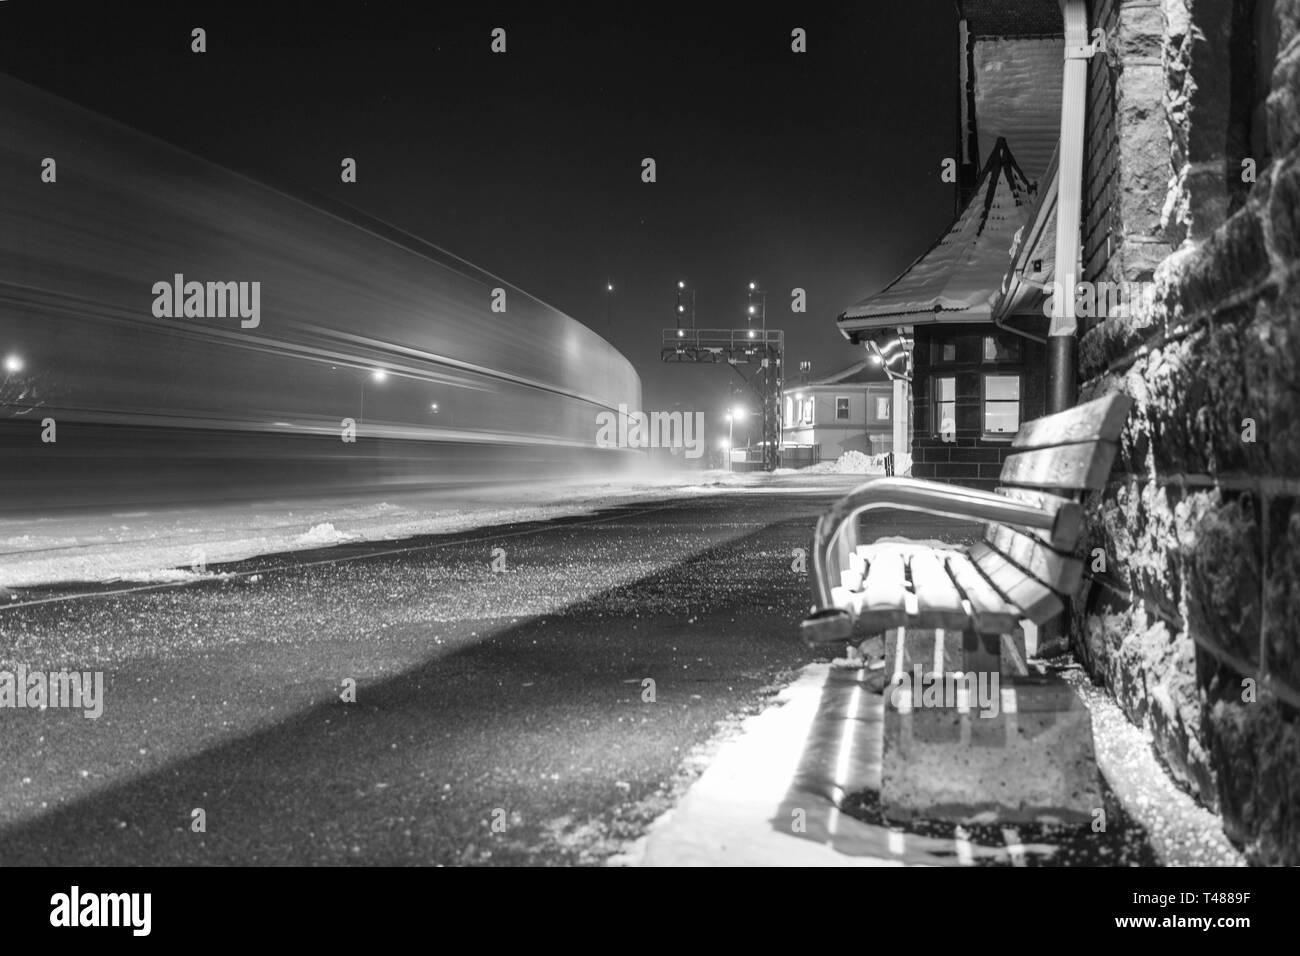 Brantford Ontario canadien national train de conteneurs de fret à l'extérieur nuit neige ciel clair gare via rail Canada exposition obturateur longue motion blur Banque D'Images